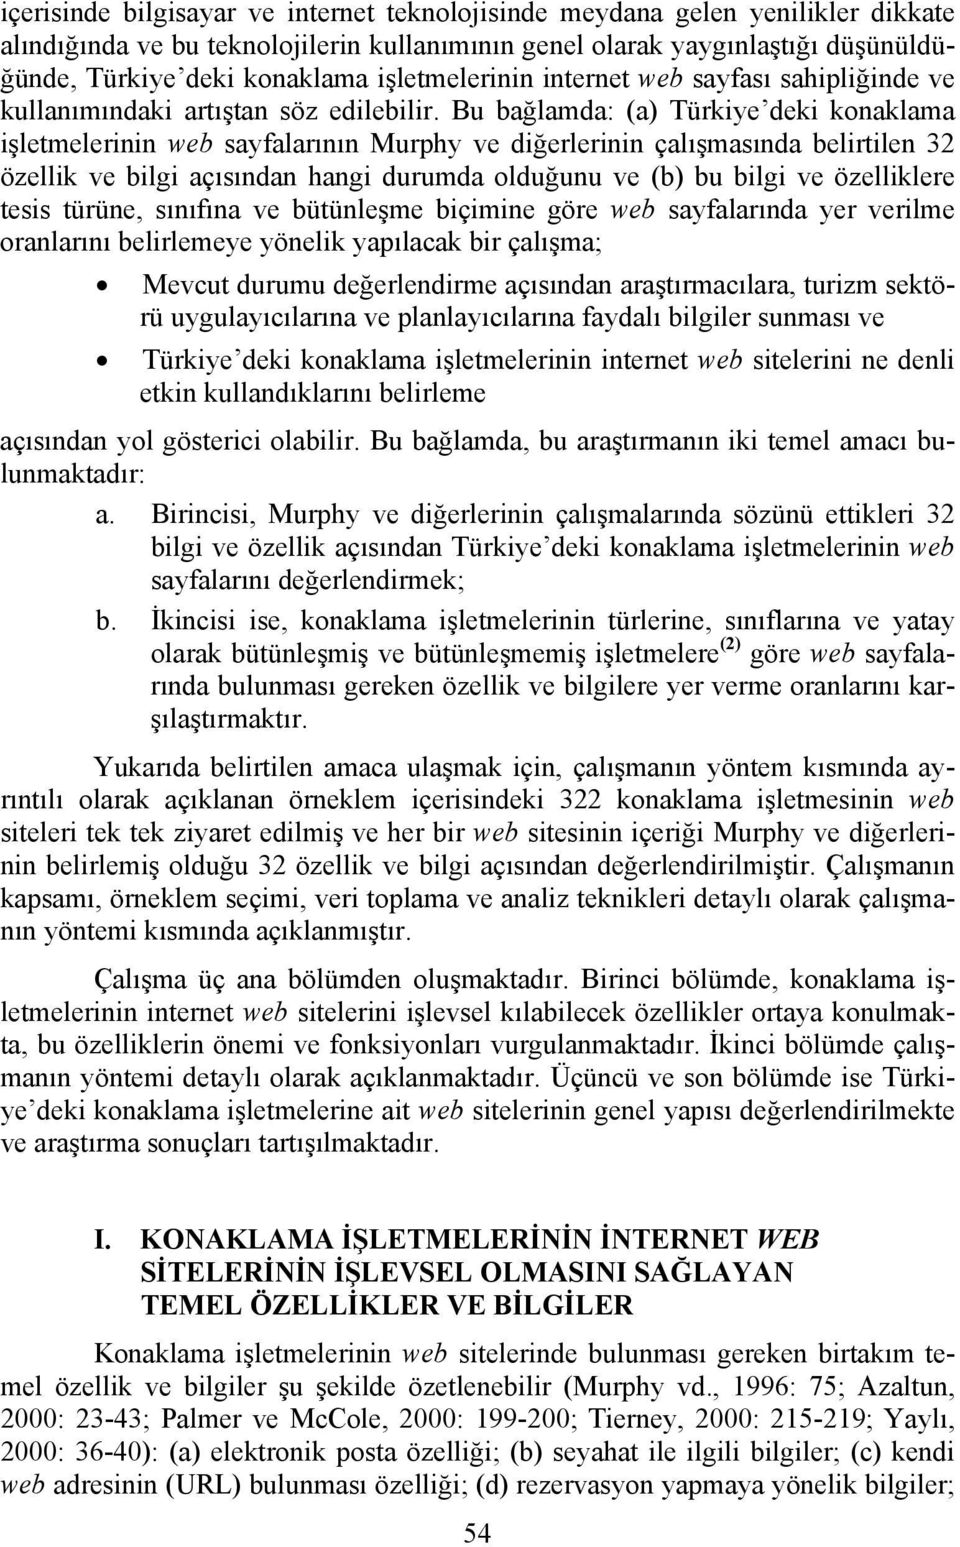 Bu bağlamda: (a) Türkiye deki konaklama işletmelerinin web sayfalarının Murphy ve diğerlerinin çalışmasında belirtilen 32 özellik ve bilgi açısından hangi durumda olduğunu ve (b) bu bilgi ve